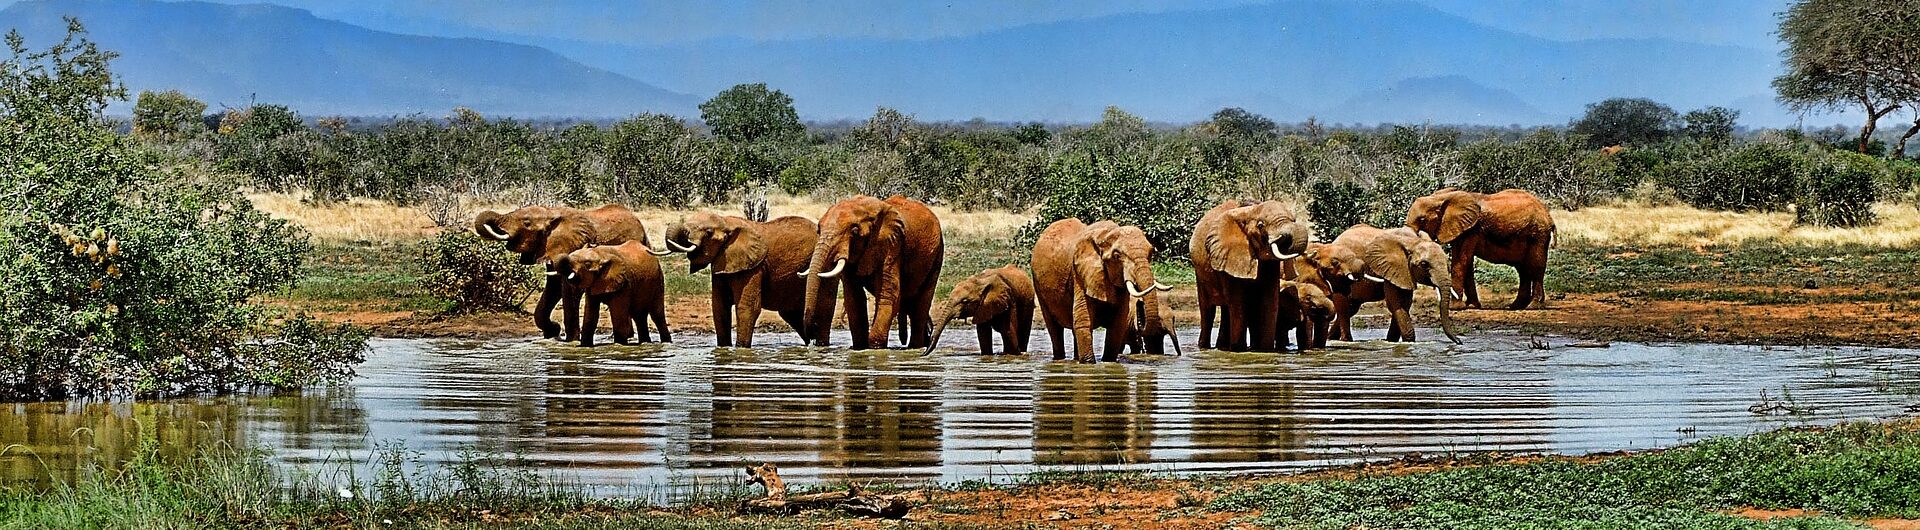 Afryka, słonie